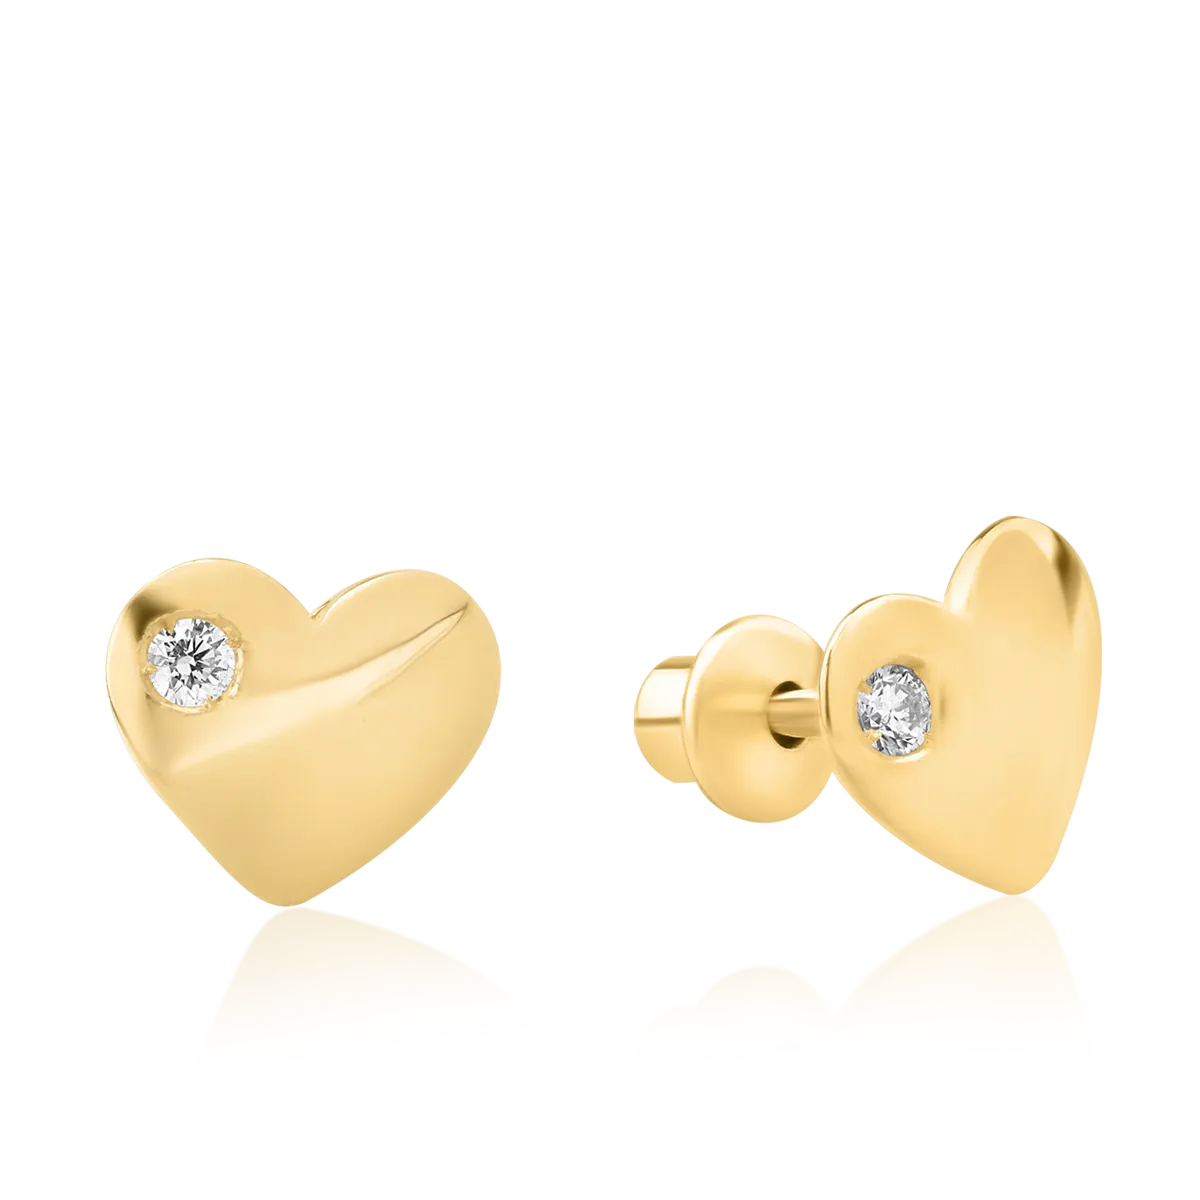 Обеци за деца: сърчице от жълто злато 14К с диаманти 0.04гкт.